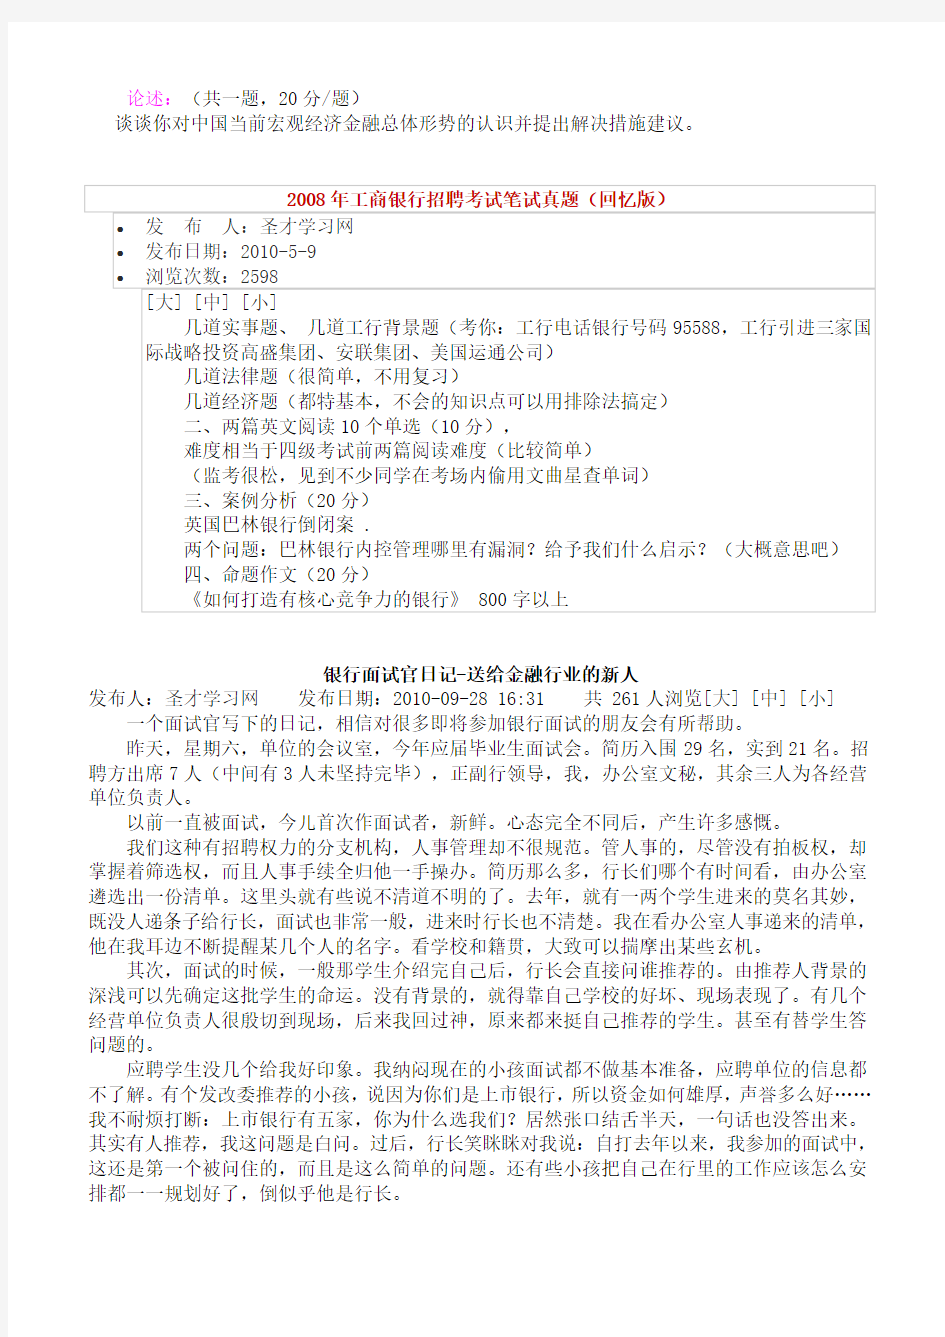 2020年中国人民银行支行招聘考试笔试部分试题